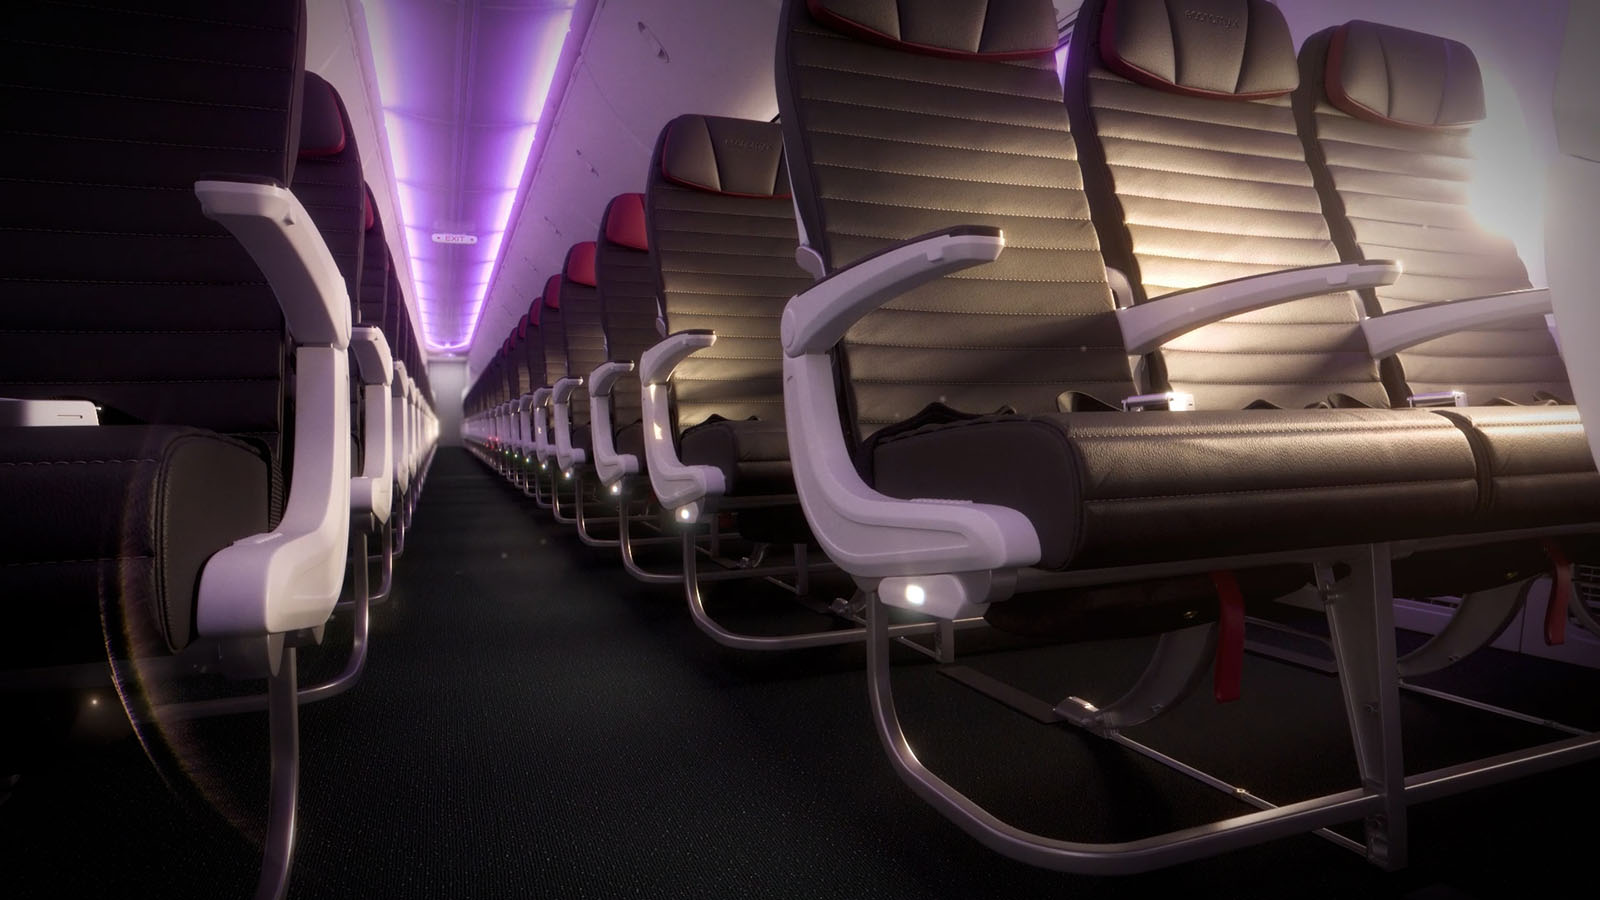 Cabin lighting on Virgin Australia's Boeing 737